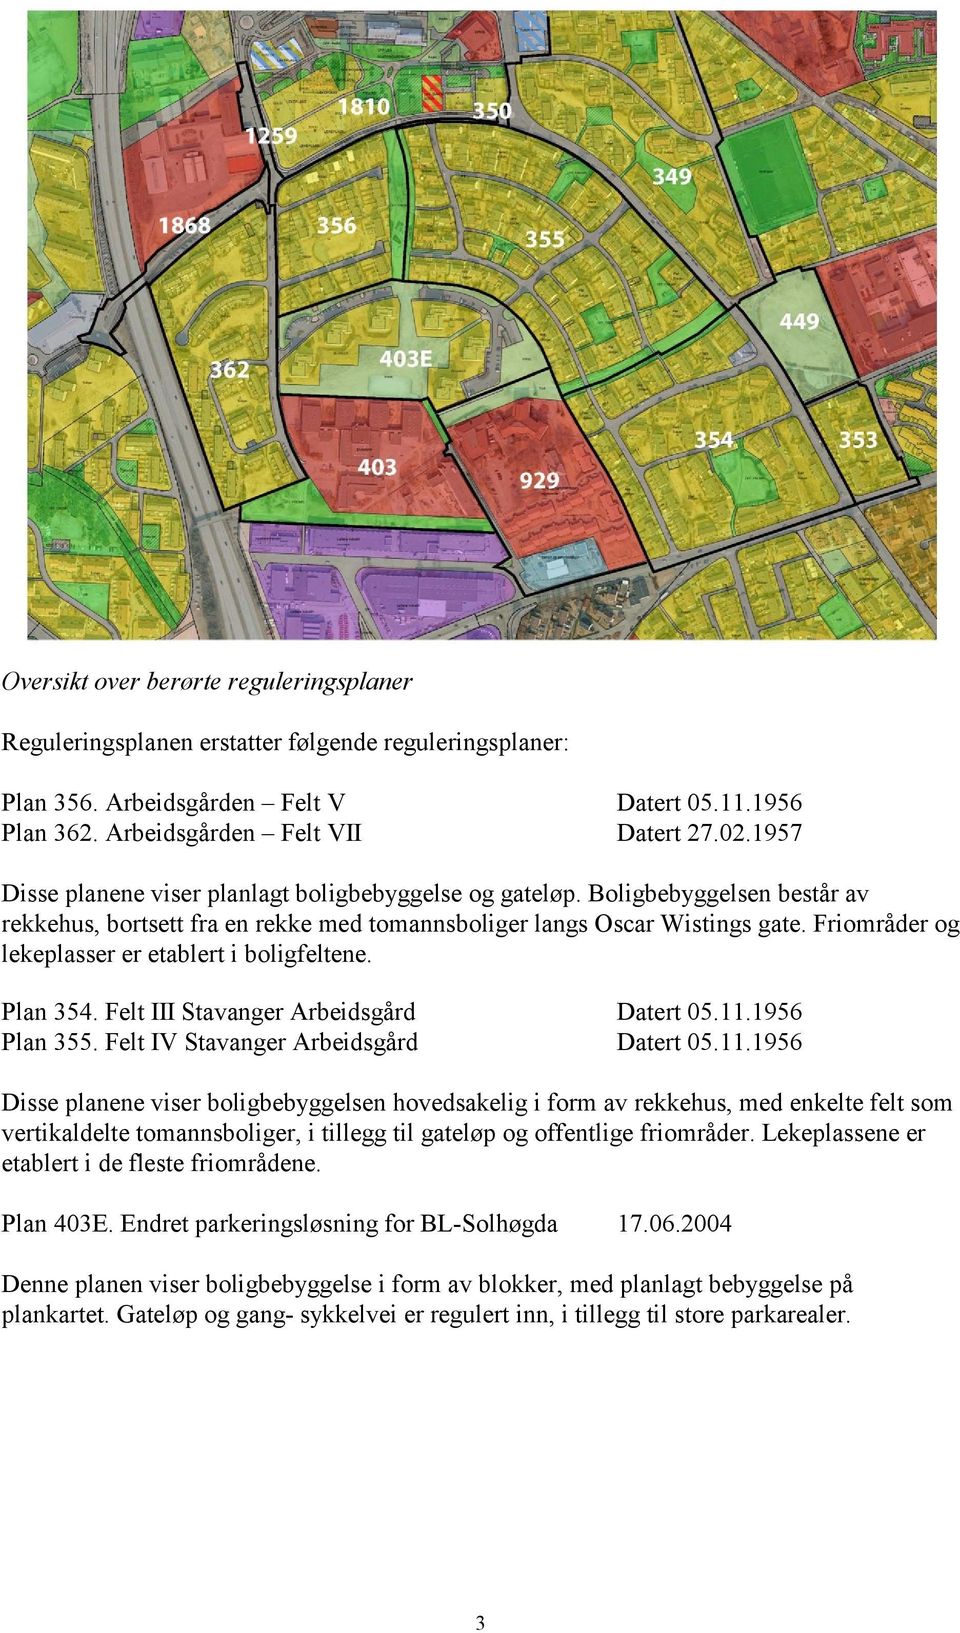 Friområder og lekeplasser er etablert i boligfeltene. Plan 354. Felt III Stavanger Arbeidsgård Datert 05.11.